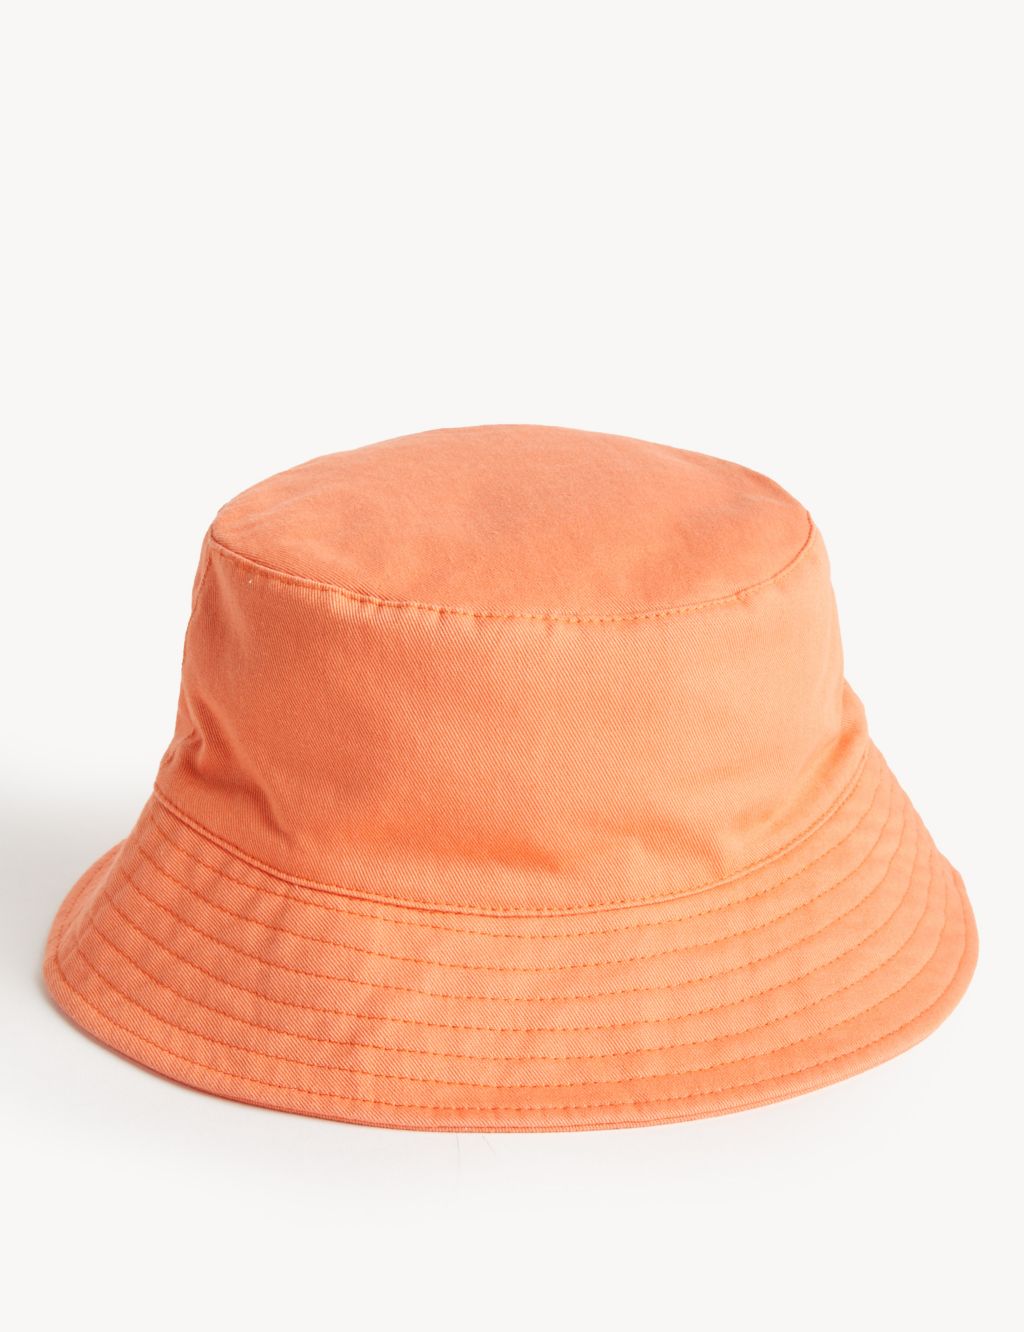 Kids' Pure Cotton Plain Sun Hat (0-13 Yrs) image 1